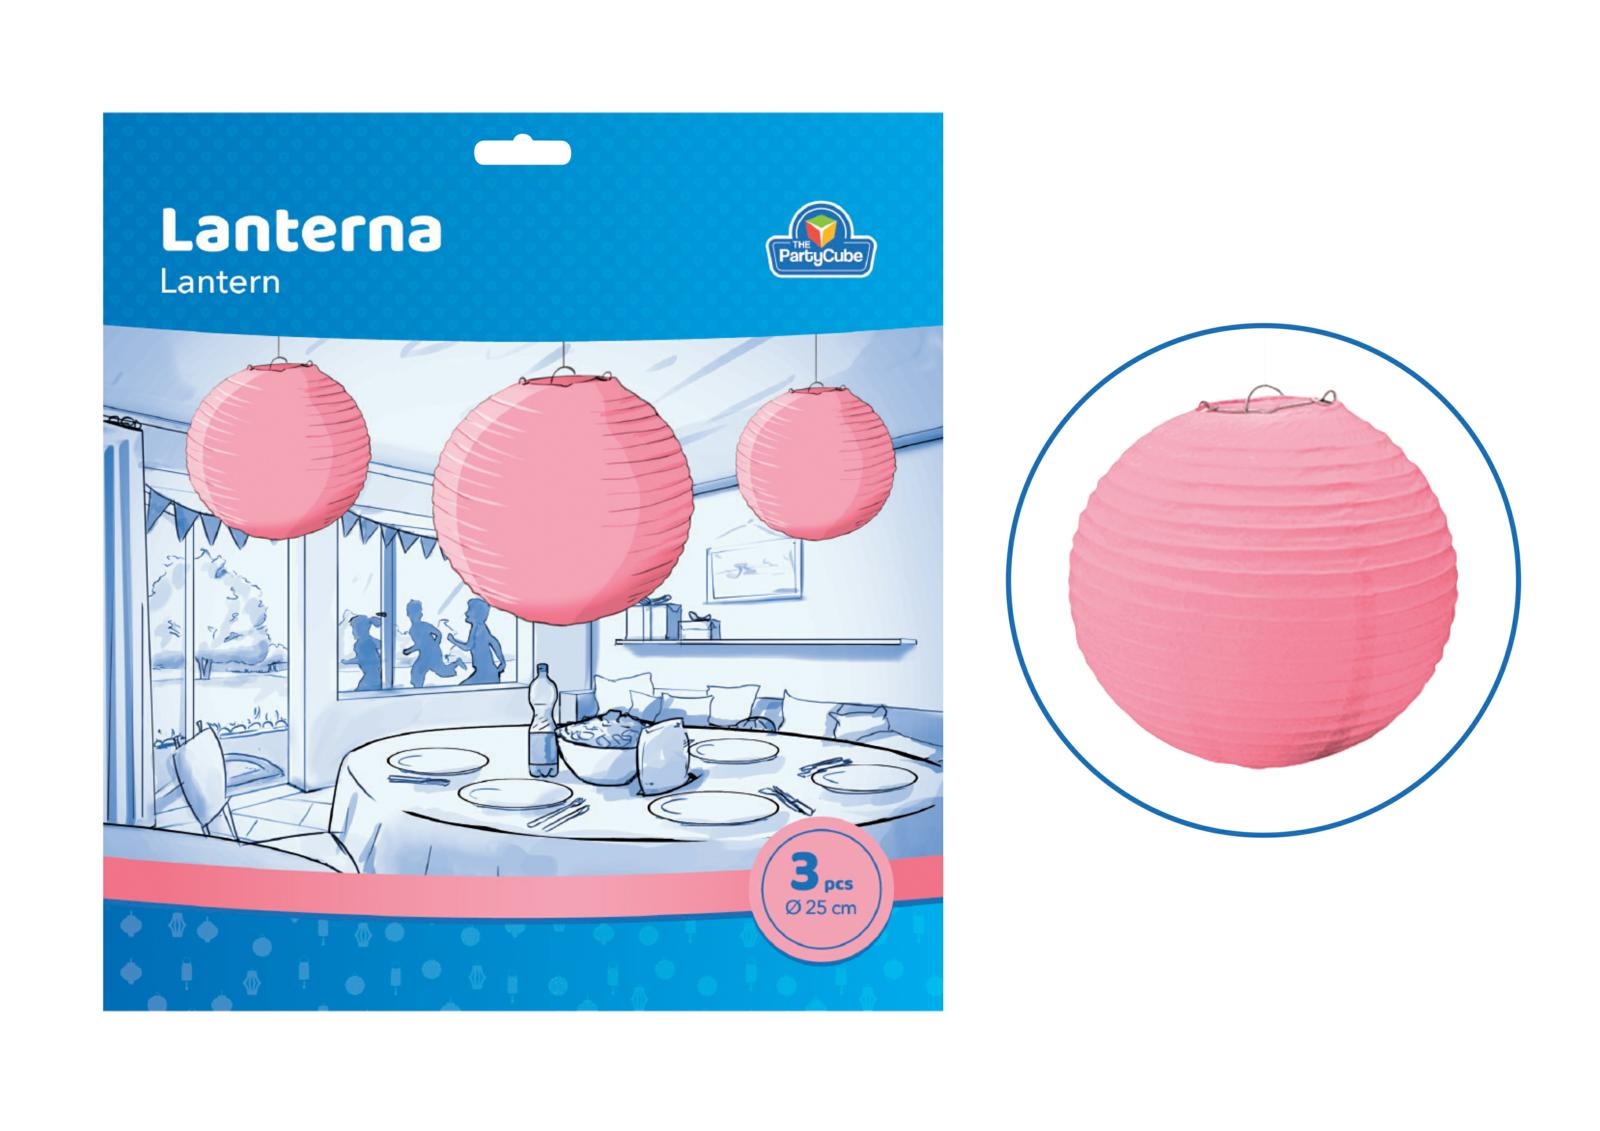  3 pz. lantern round paper pink    25 cm.